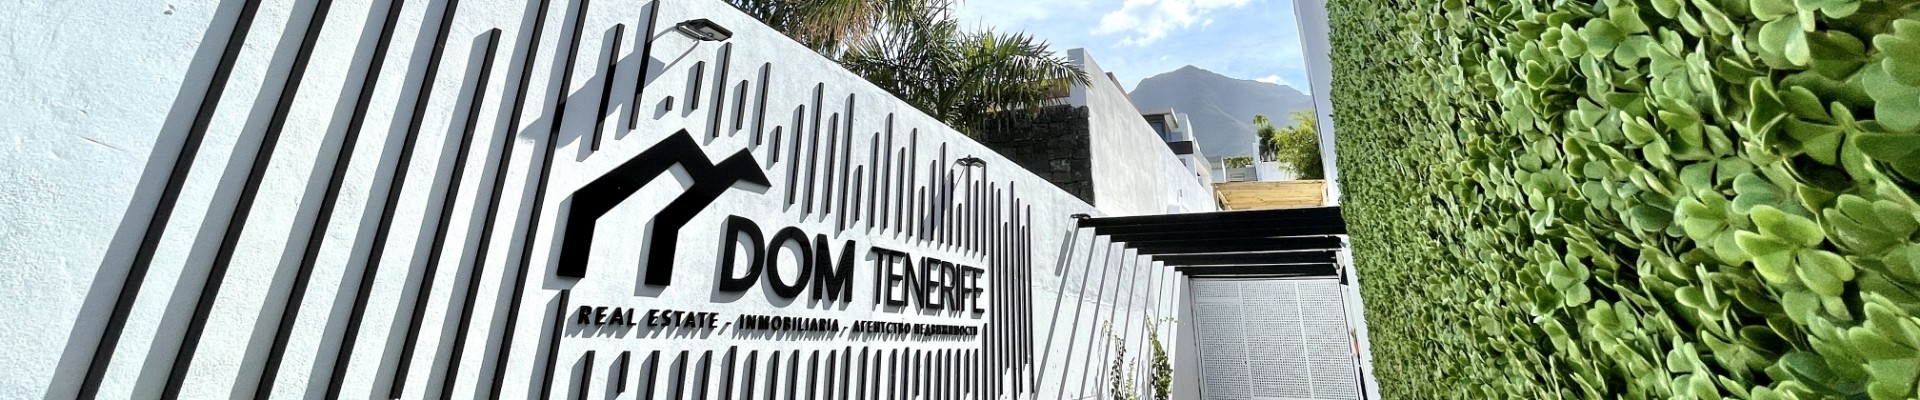 Verkaufen Sie Ihre Immobilie mit DOM Tenerife Real Estate